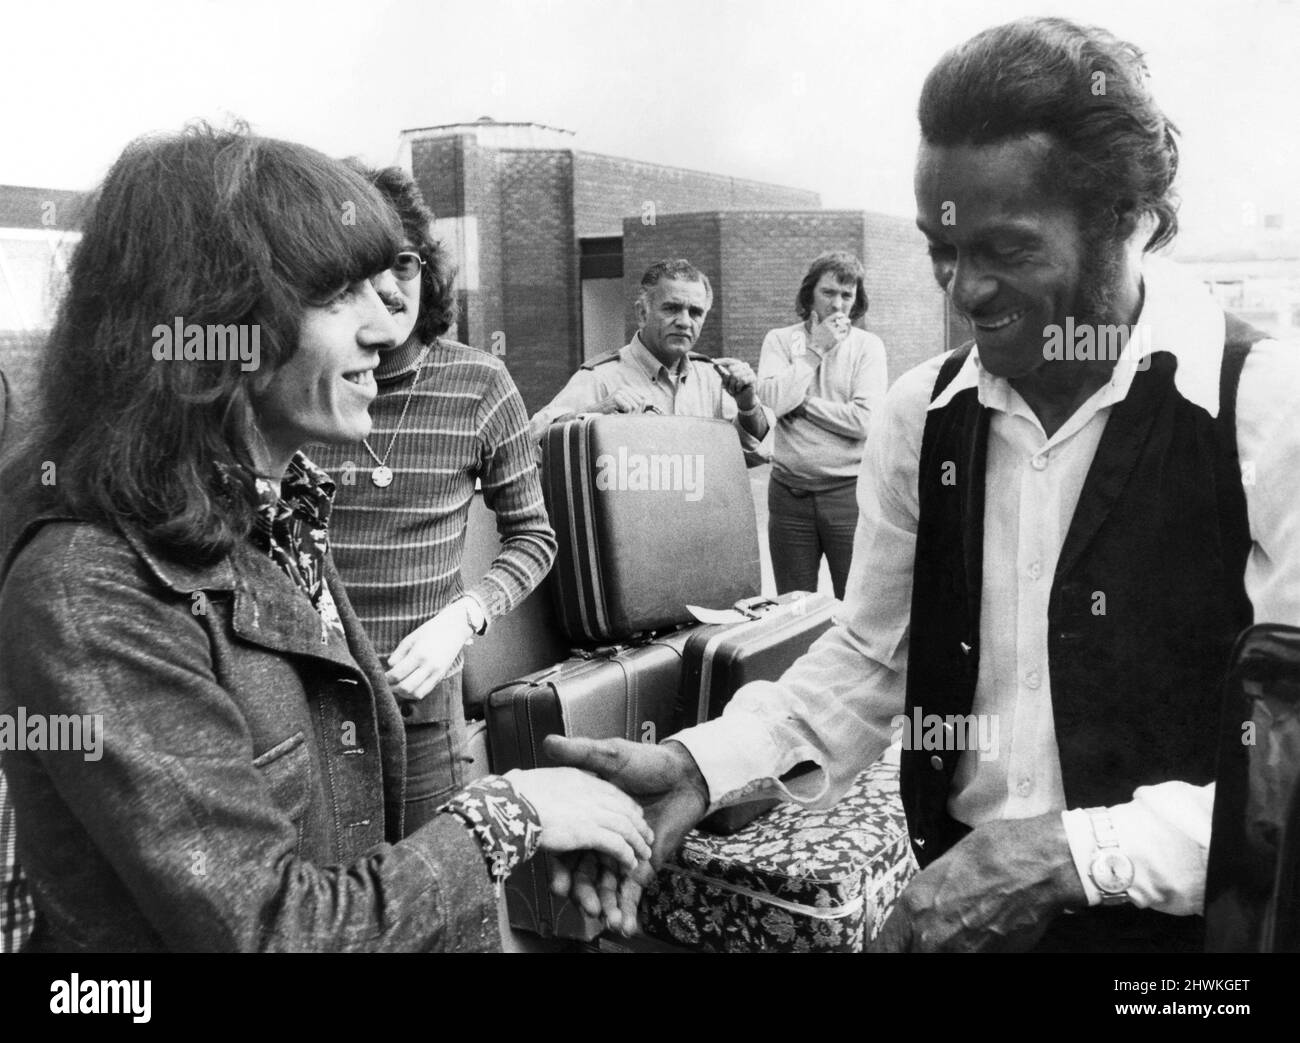 Samedi, le Wambley Stadium de Londres accueille ce qui est considéré comme le « plus grand spectacle rock'n' roll jamais réuni ». Le spectacle sera orné d'une étoile des deux côtés de l'Atlantique. L'un des artistes sera Chuck Berry, qui a décollé d'Amérique jeudi. À l'aéroport de Londres Heathrow, Chuck a eu une chance de rencontrer Bill Wyman des Rolling Stones qui traversaient. Chuck Berry (à droite) rencontre Rolling Stone Bill Wyman à Heathrow. Août 1972 P020628 Banque D'Images